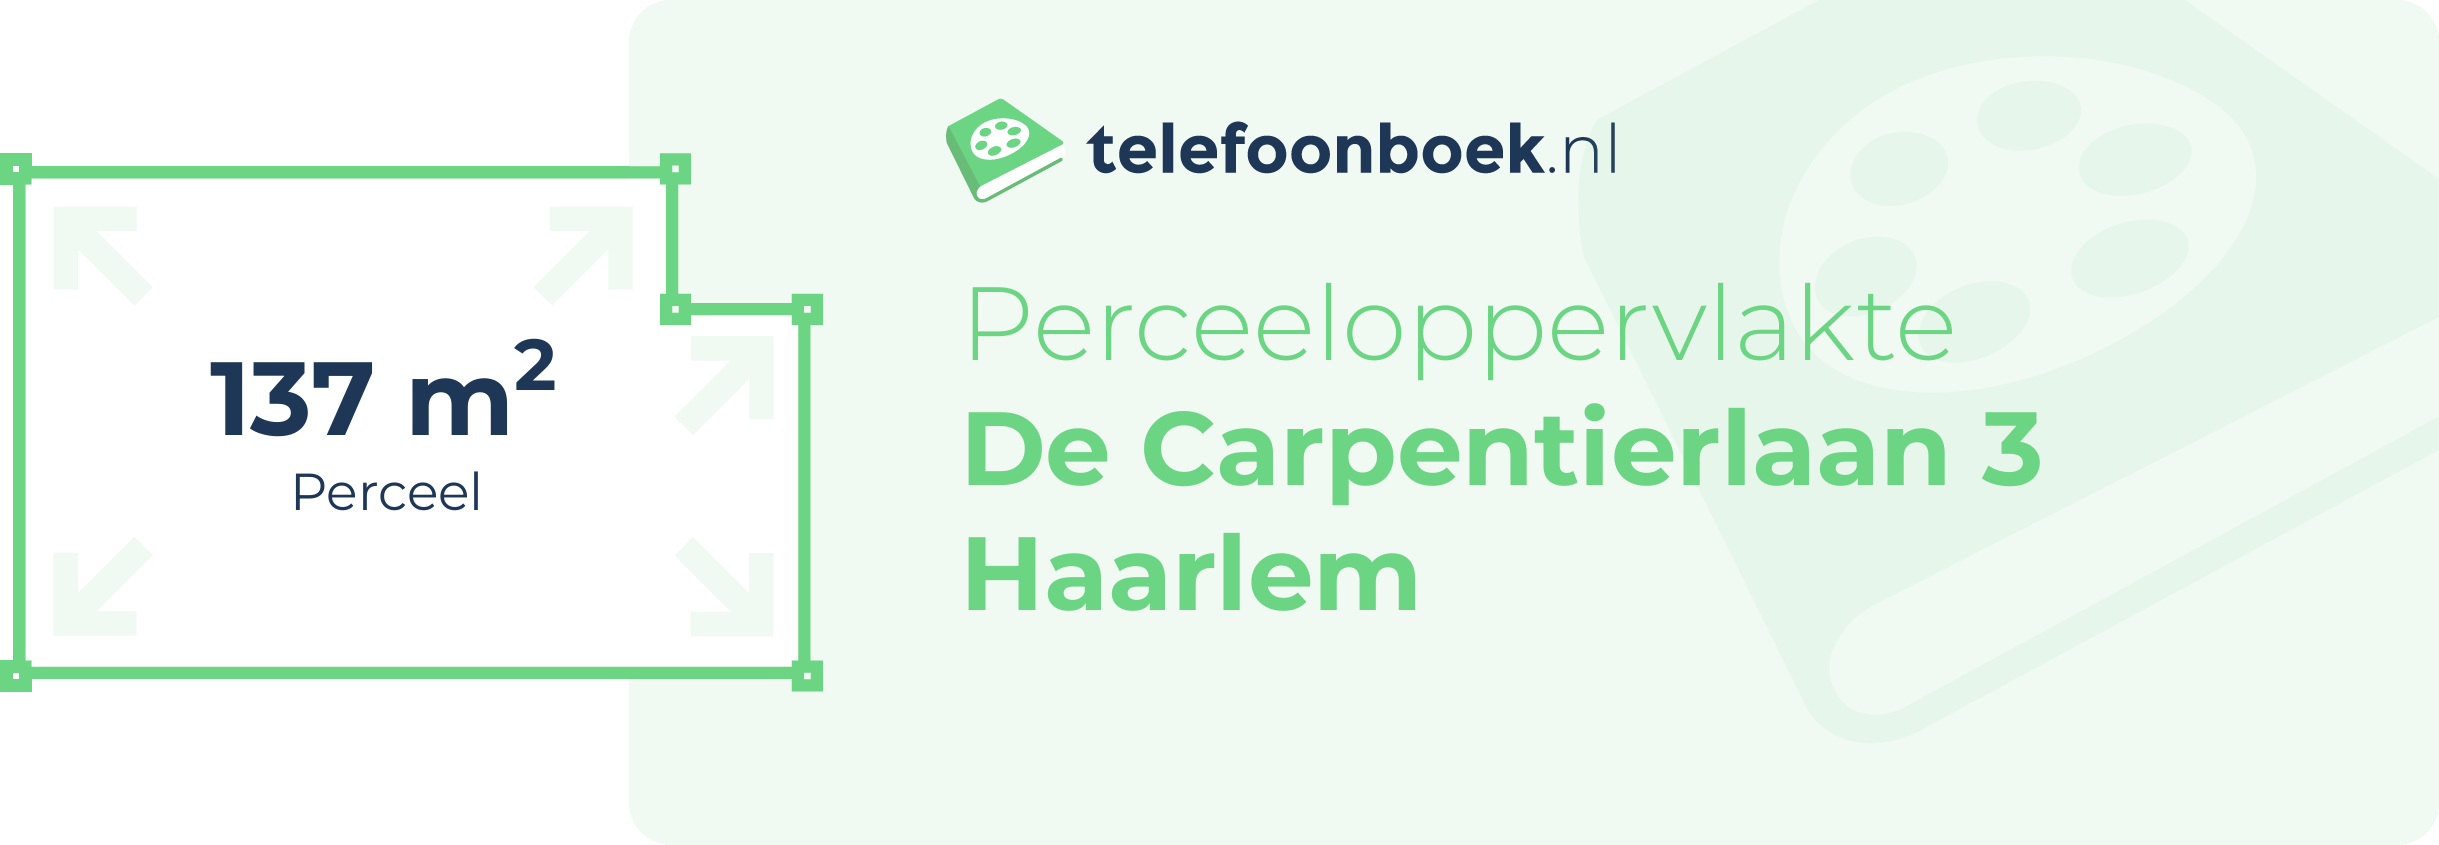 Perceeloppervlakte De Carpentierlaan 3 Haarlem